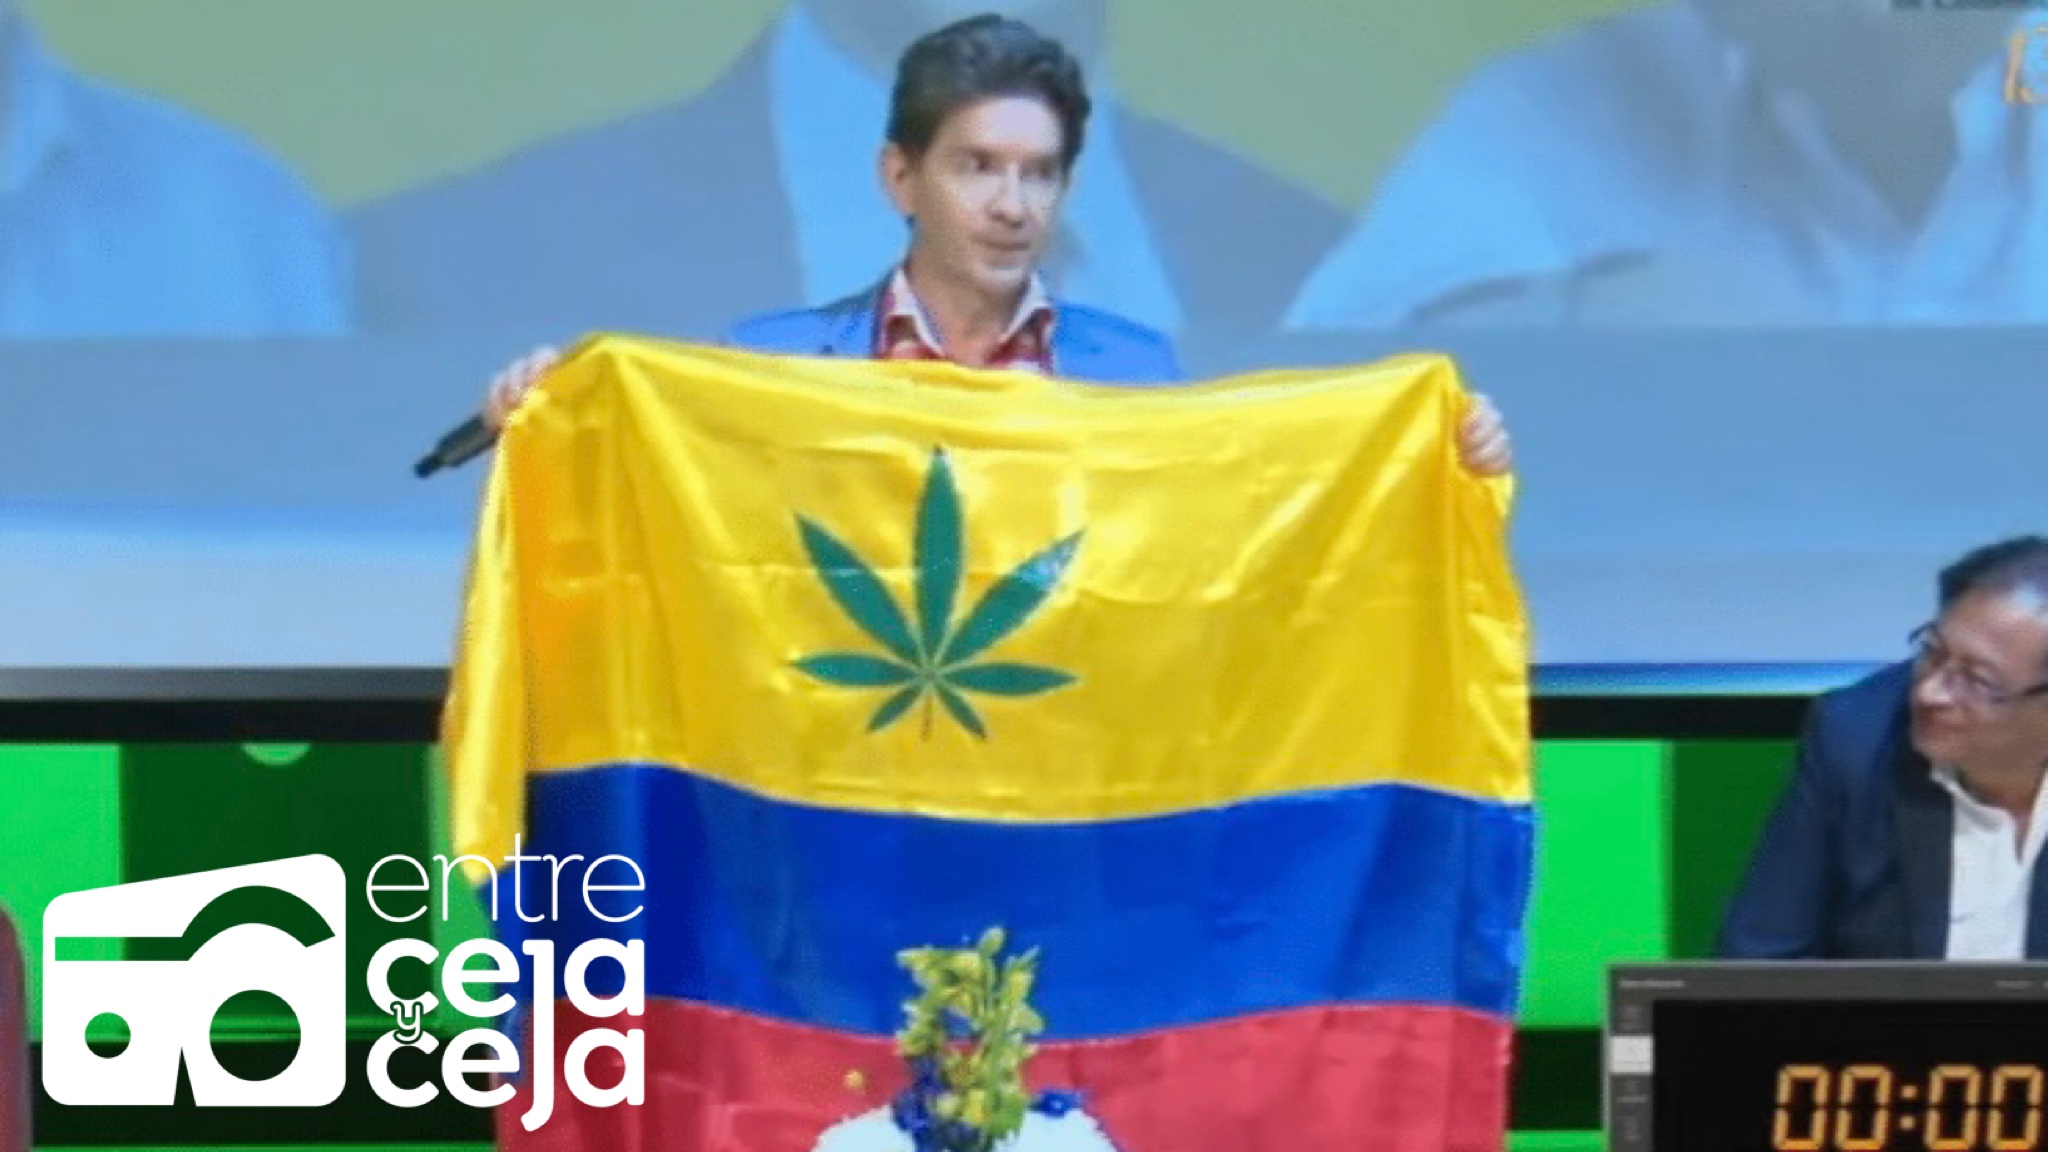 Luis Pérez declararía la marihuana como “hoja nacional” y la incluiría en la bandera